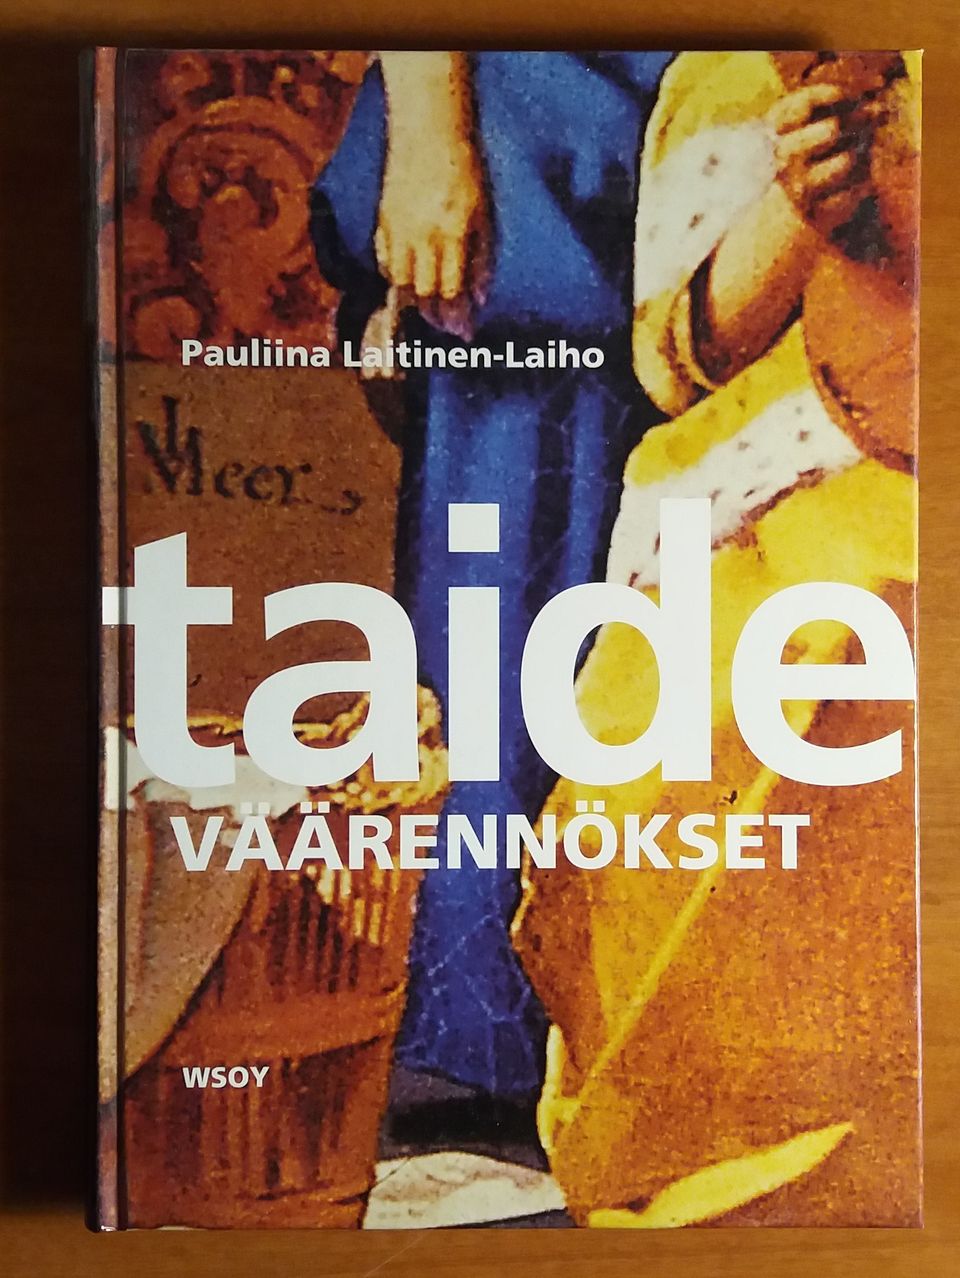 Pauliina Laitinen-Laiho TAIDEVÄÄRENNÖKSET Wsoy 2004